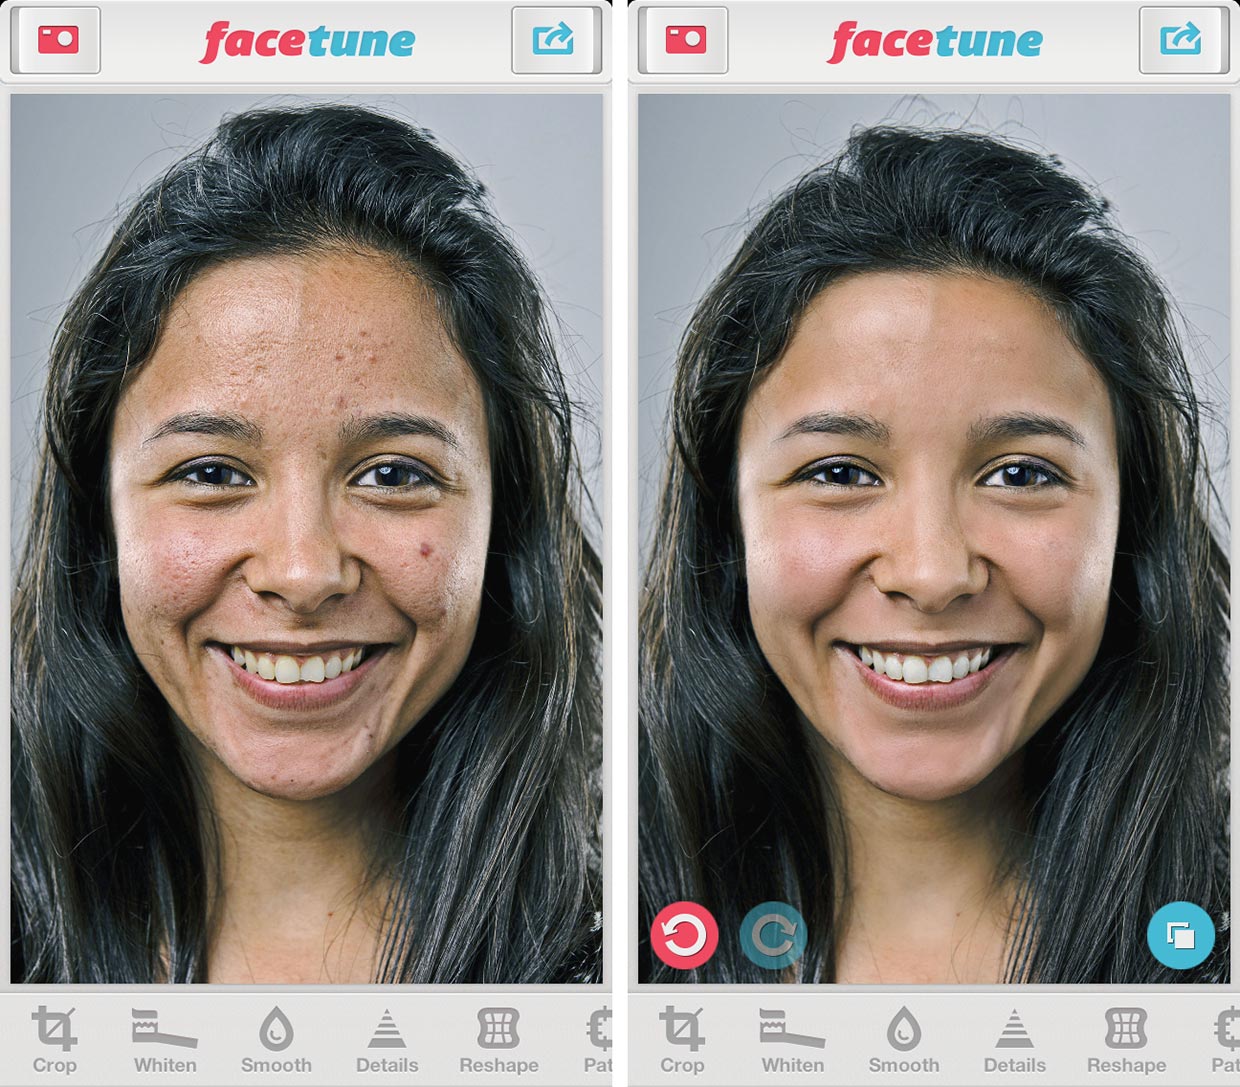 Po lewej zdjęcie dziewczyny o śniadej cerze z ciemnymi włosami z niedoskonałościami na twarzy, po prawej to samo zdjęcie po retuszu.